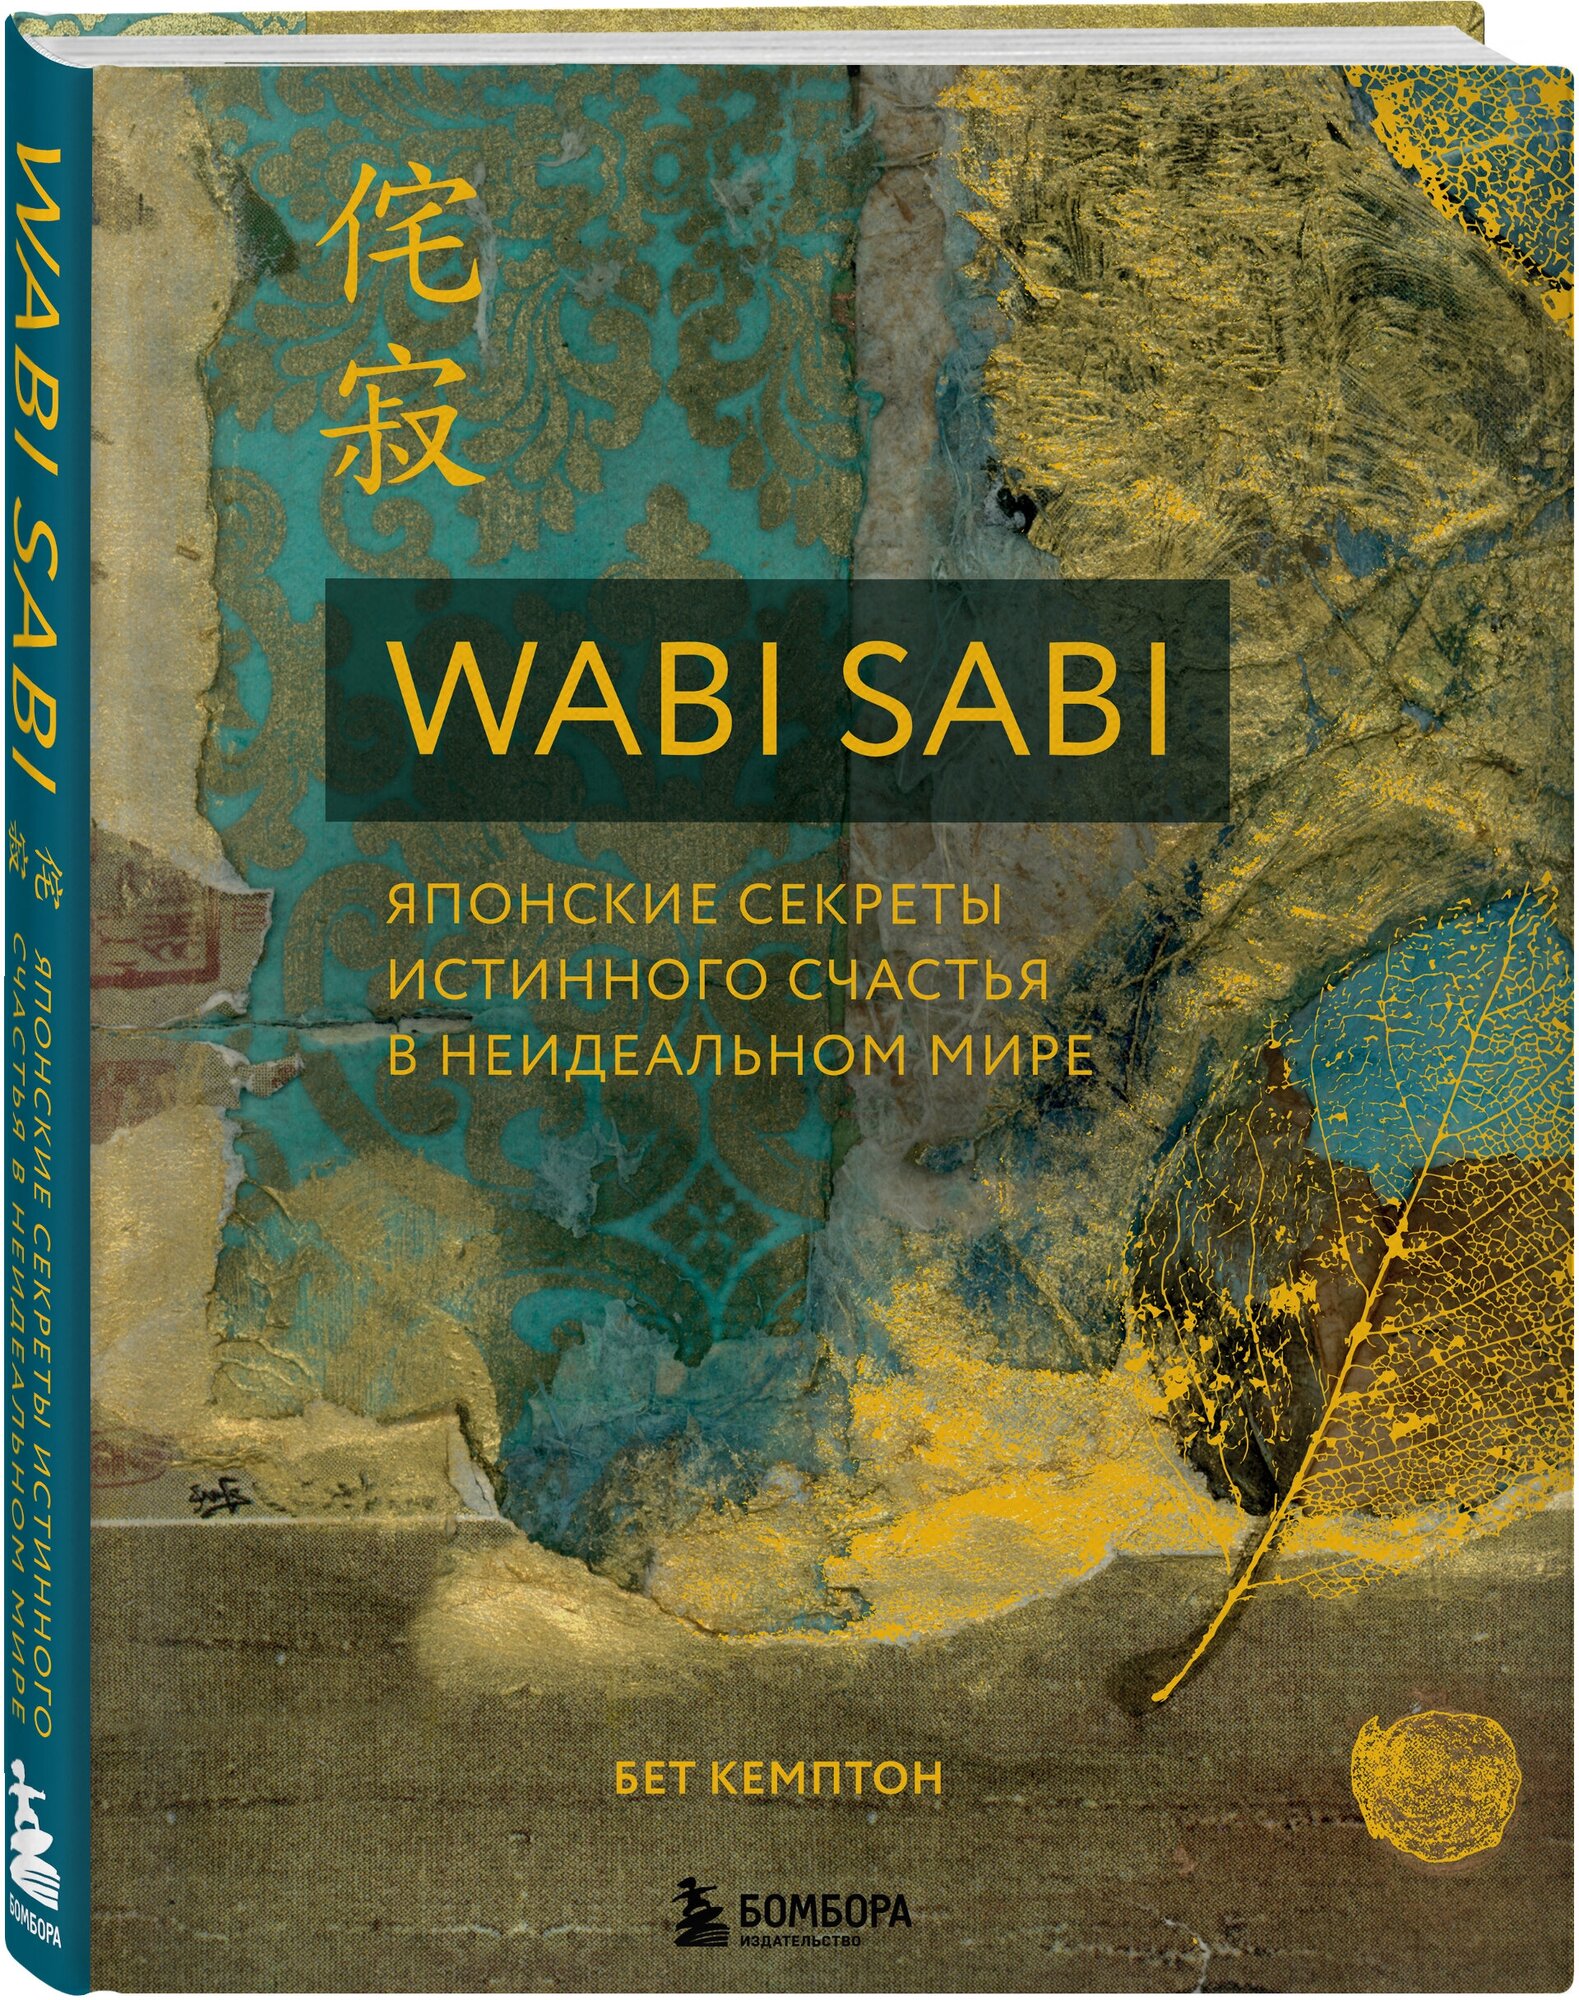 Кемптон Бет. Wabi Sabi. Японские секреты истинного счастья в неидеальном мире